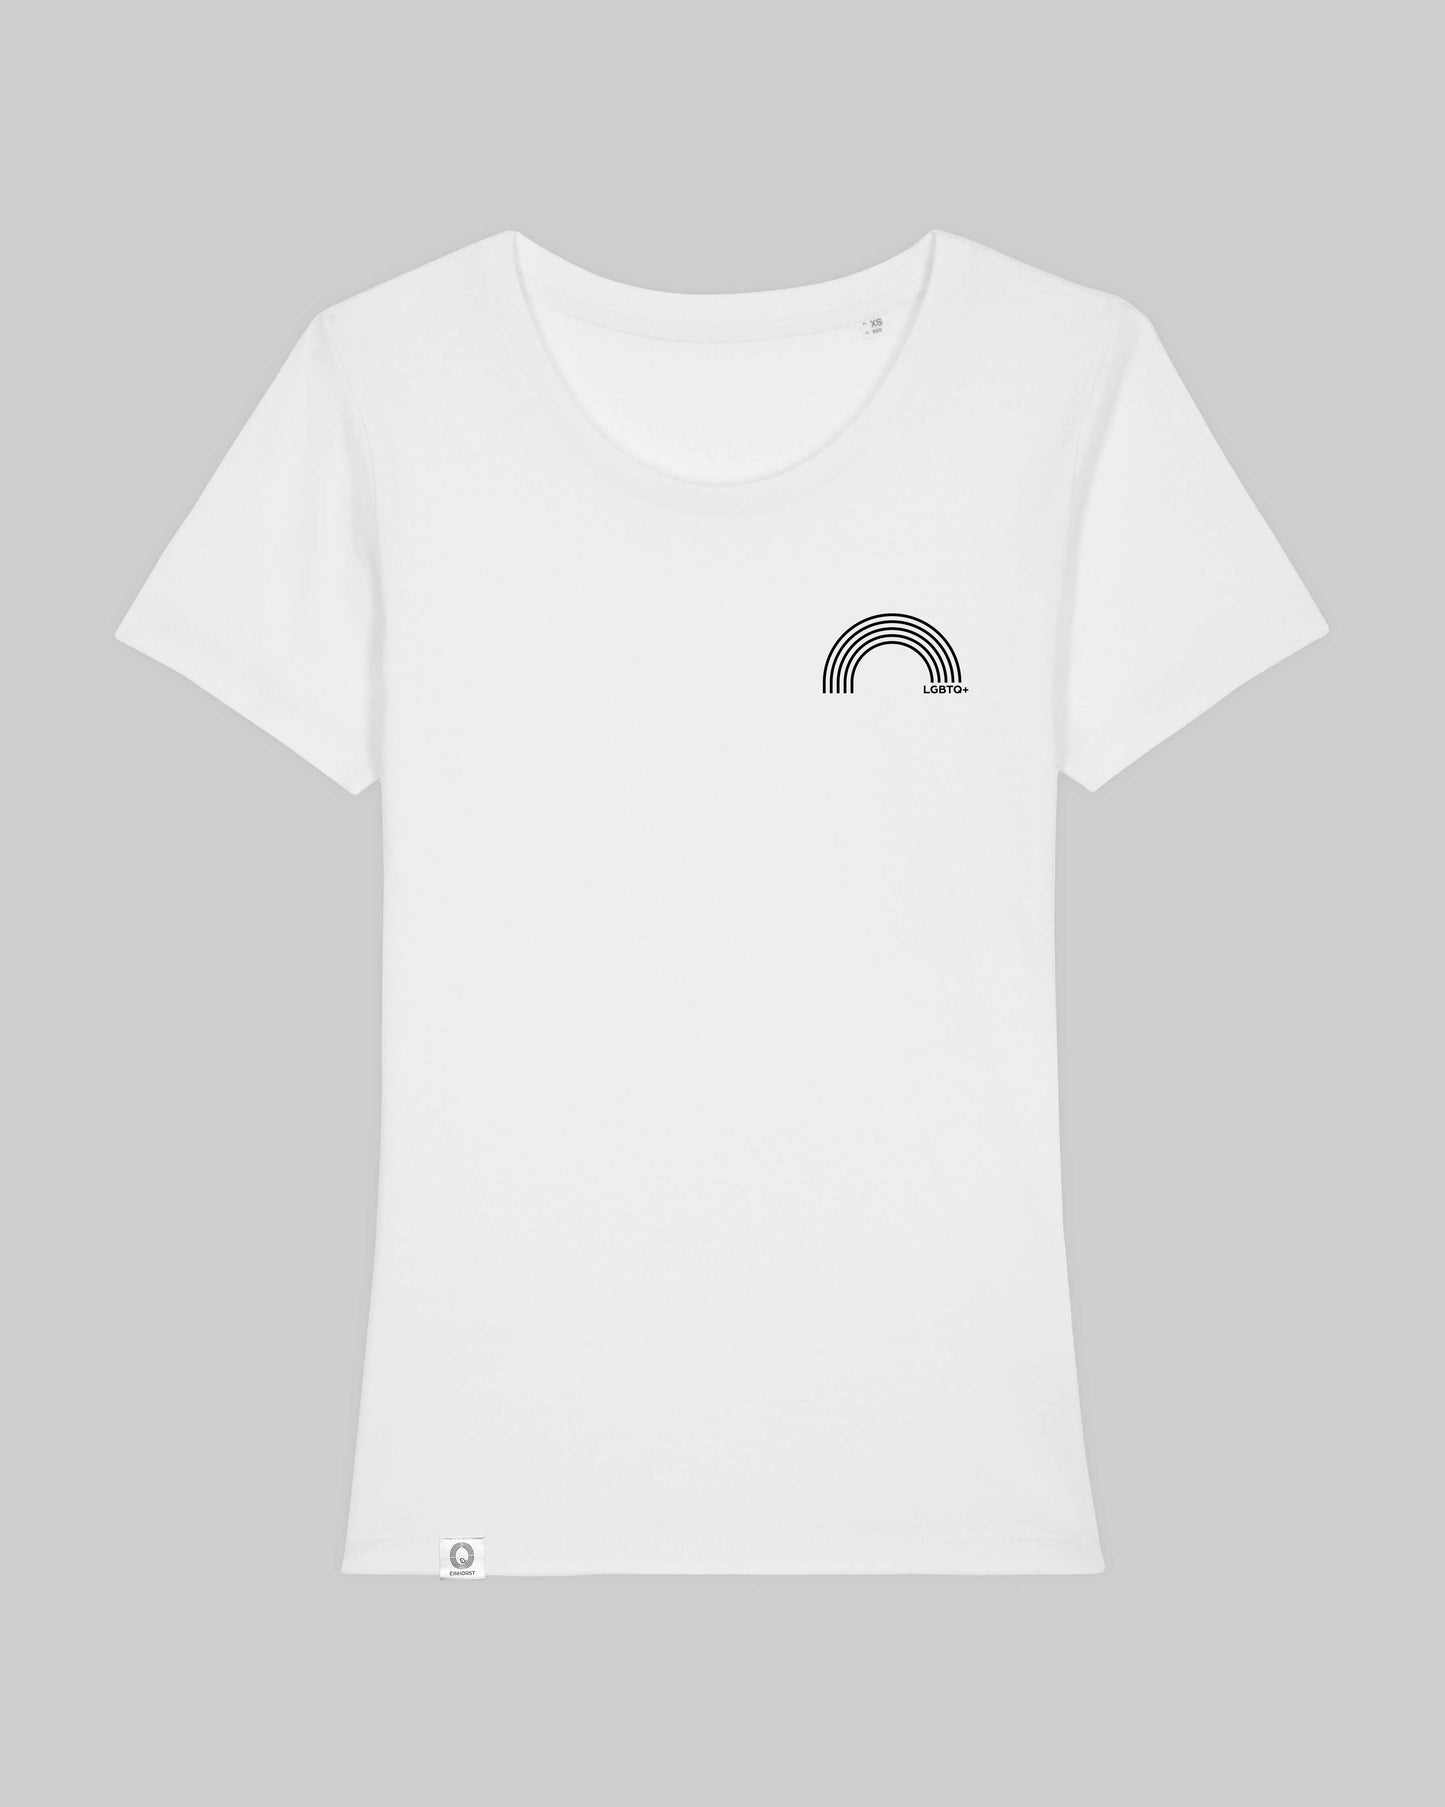 EINHORST® Organic Shirt tailliert in "Weiß" mit dem Motiv "lgbtq+ Regenbogen" in der Kombination schwarzer Regenbogen mit schwarzer Schrift, Bild von Shirt von vorne